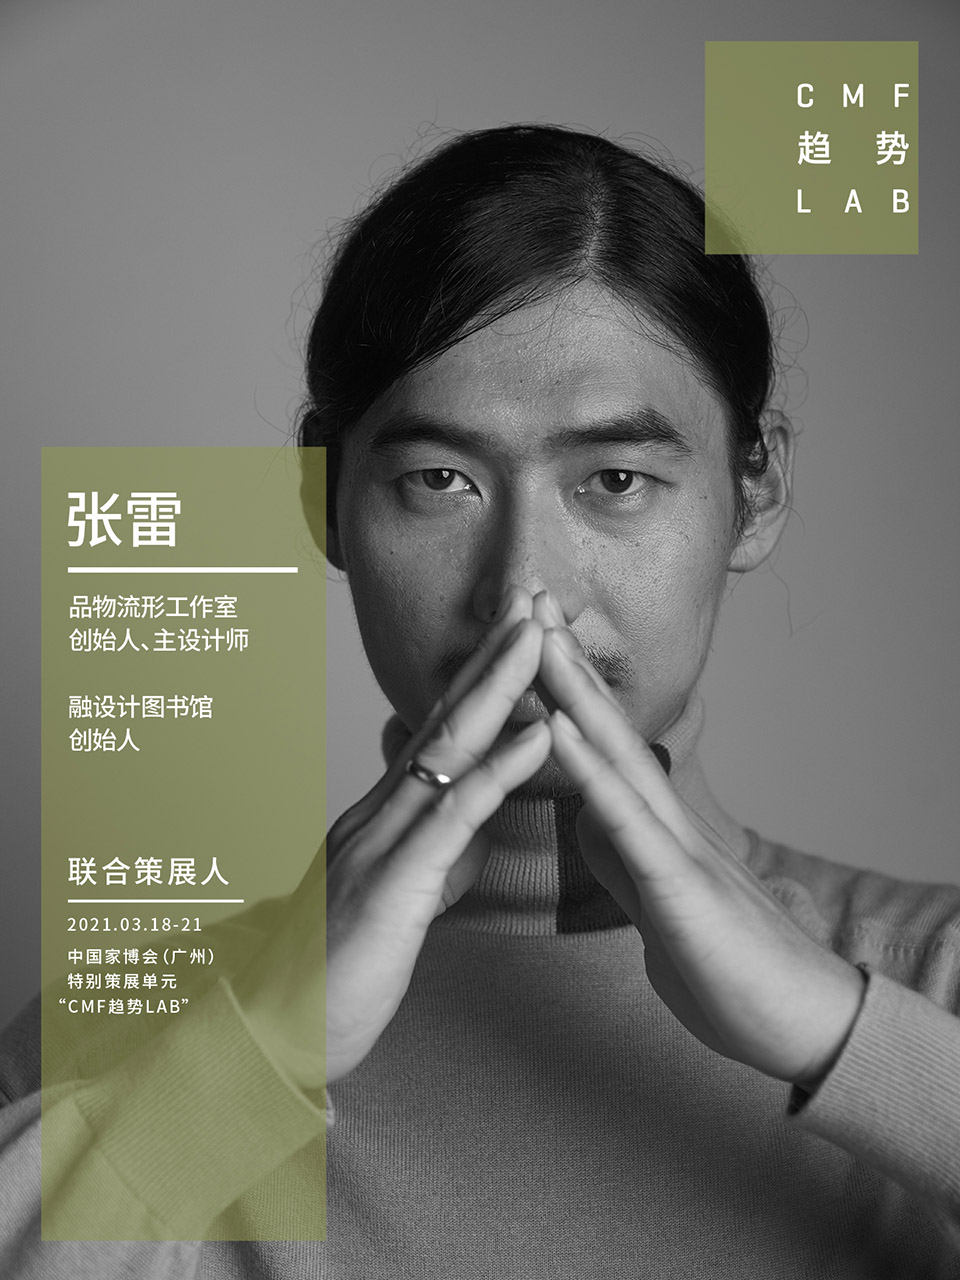 中国家博会“CMF趋势LAB” 四大主题实验室全新发布/“虚拟重构实验室”、“融手艺材料实验室”、“精致懒实验室”、“无废实验室”
-35